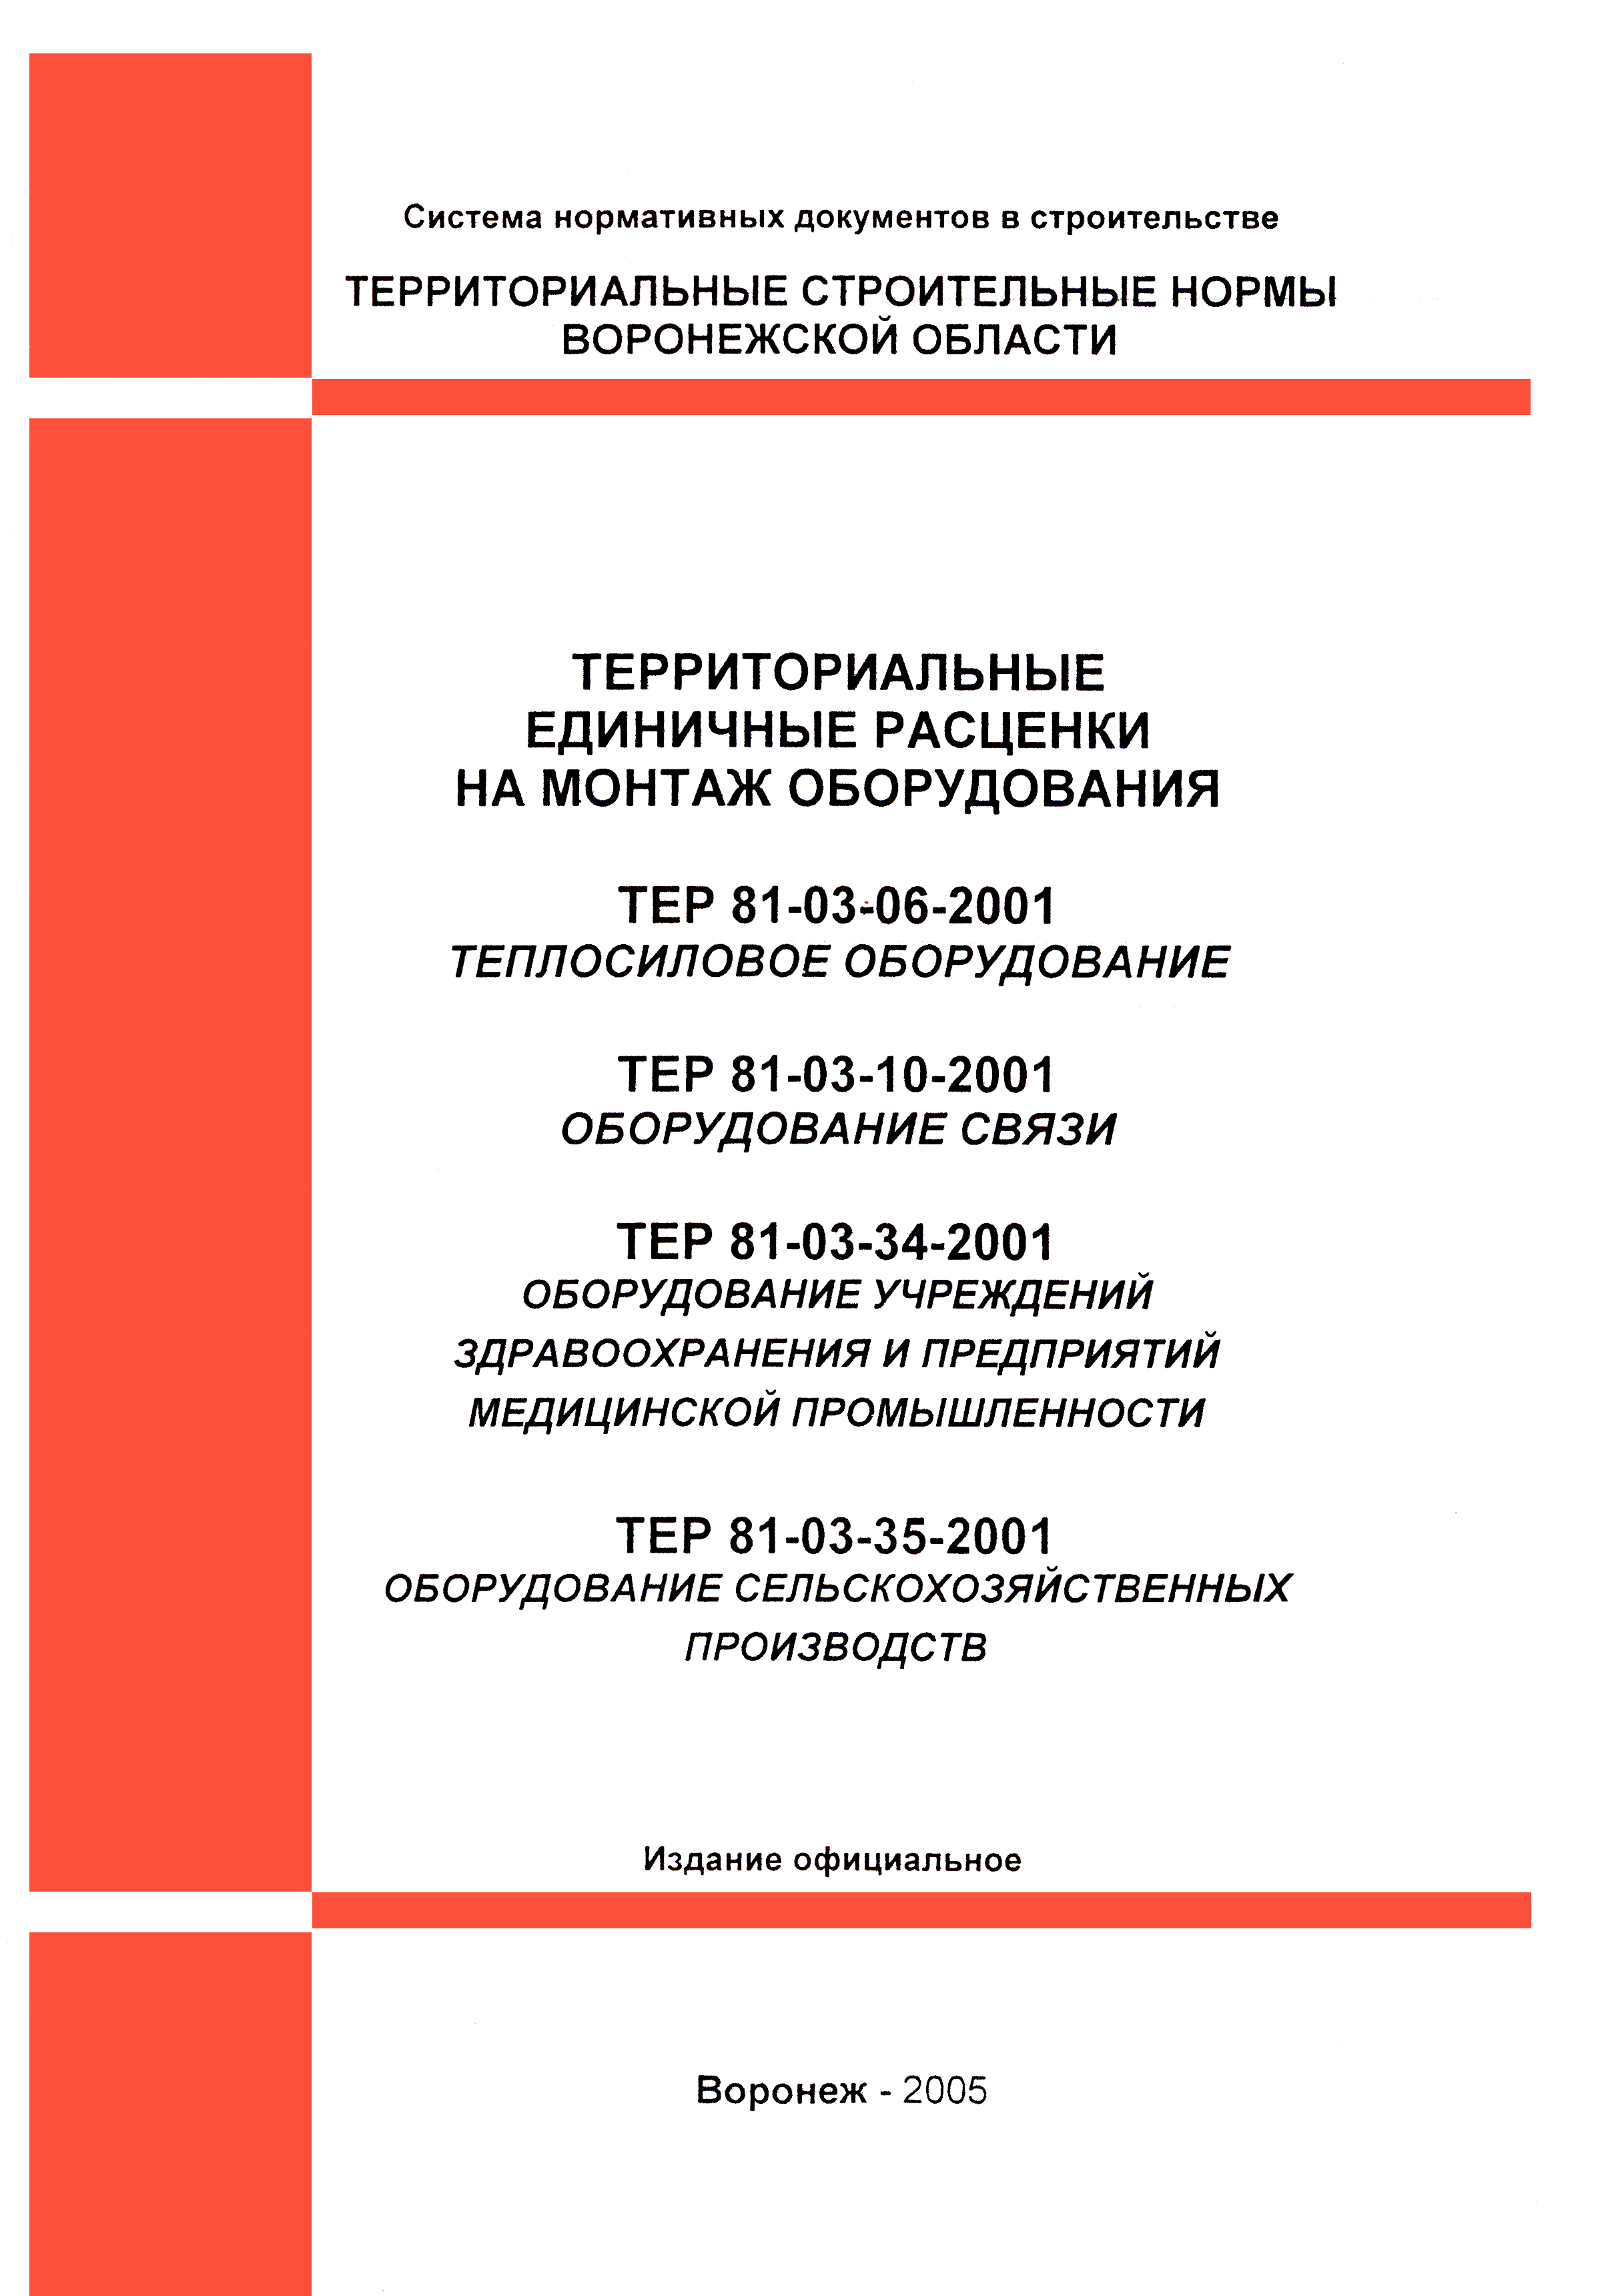 ТЕРм Воронежская область 81-03-06-2001